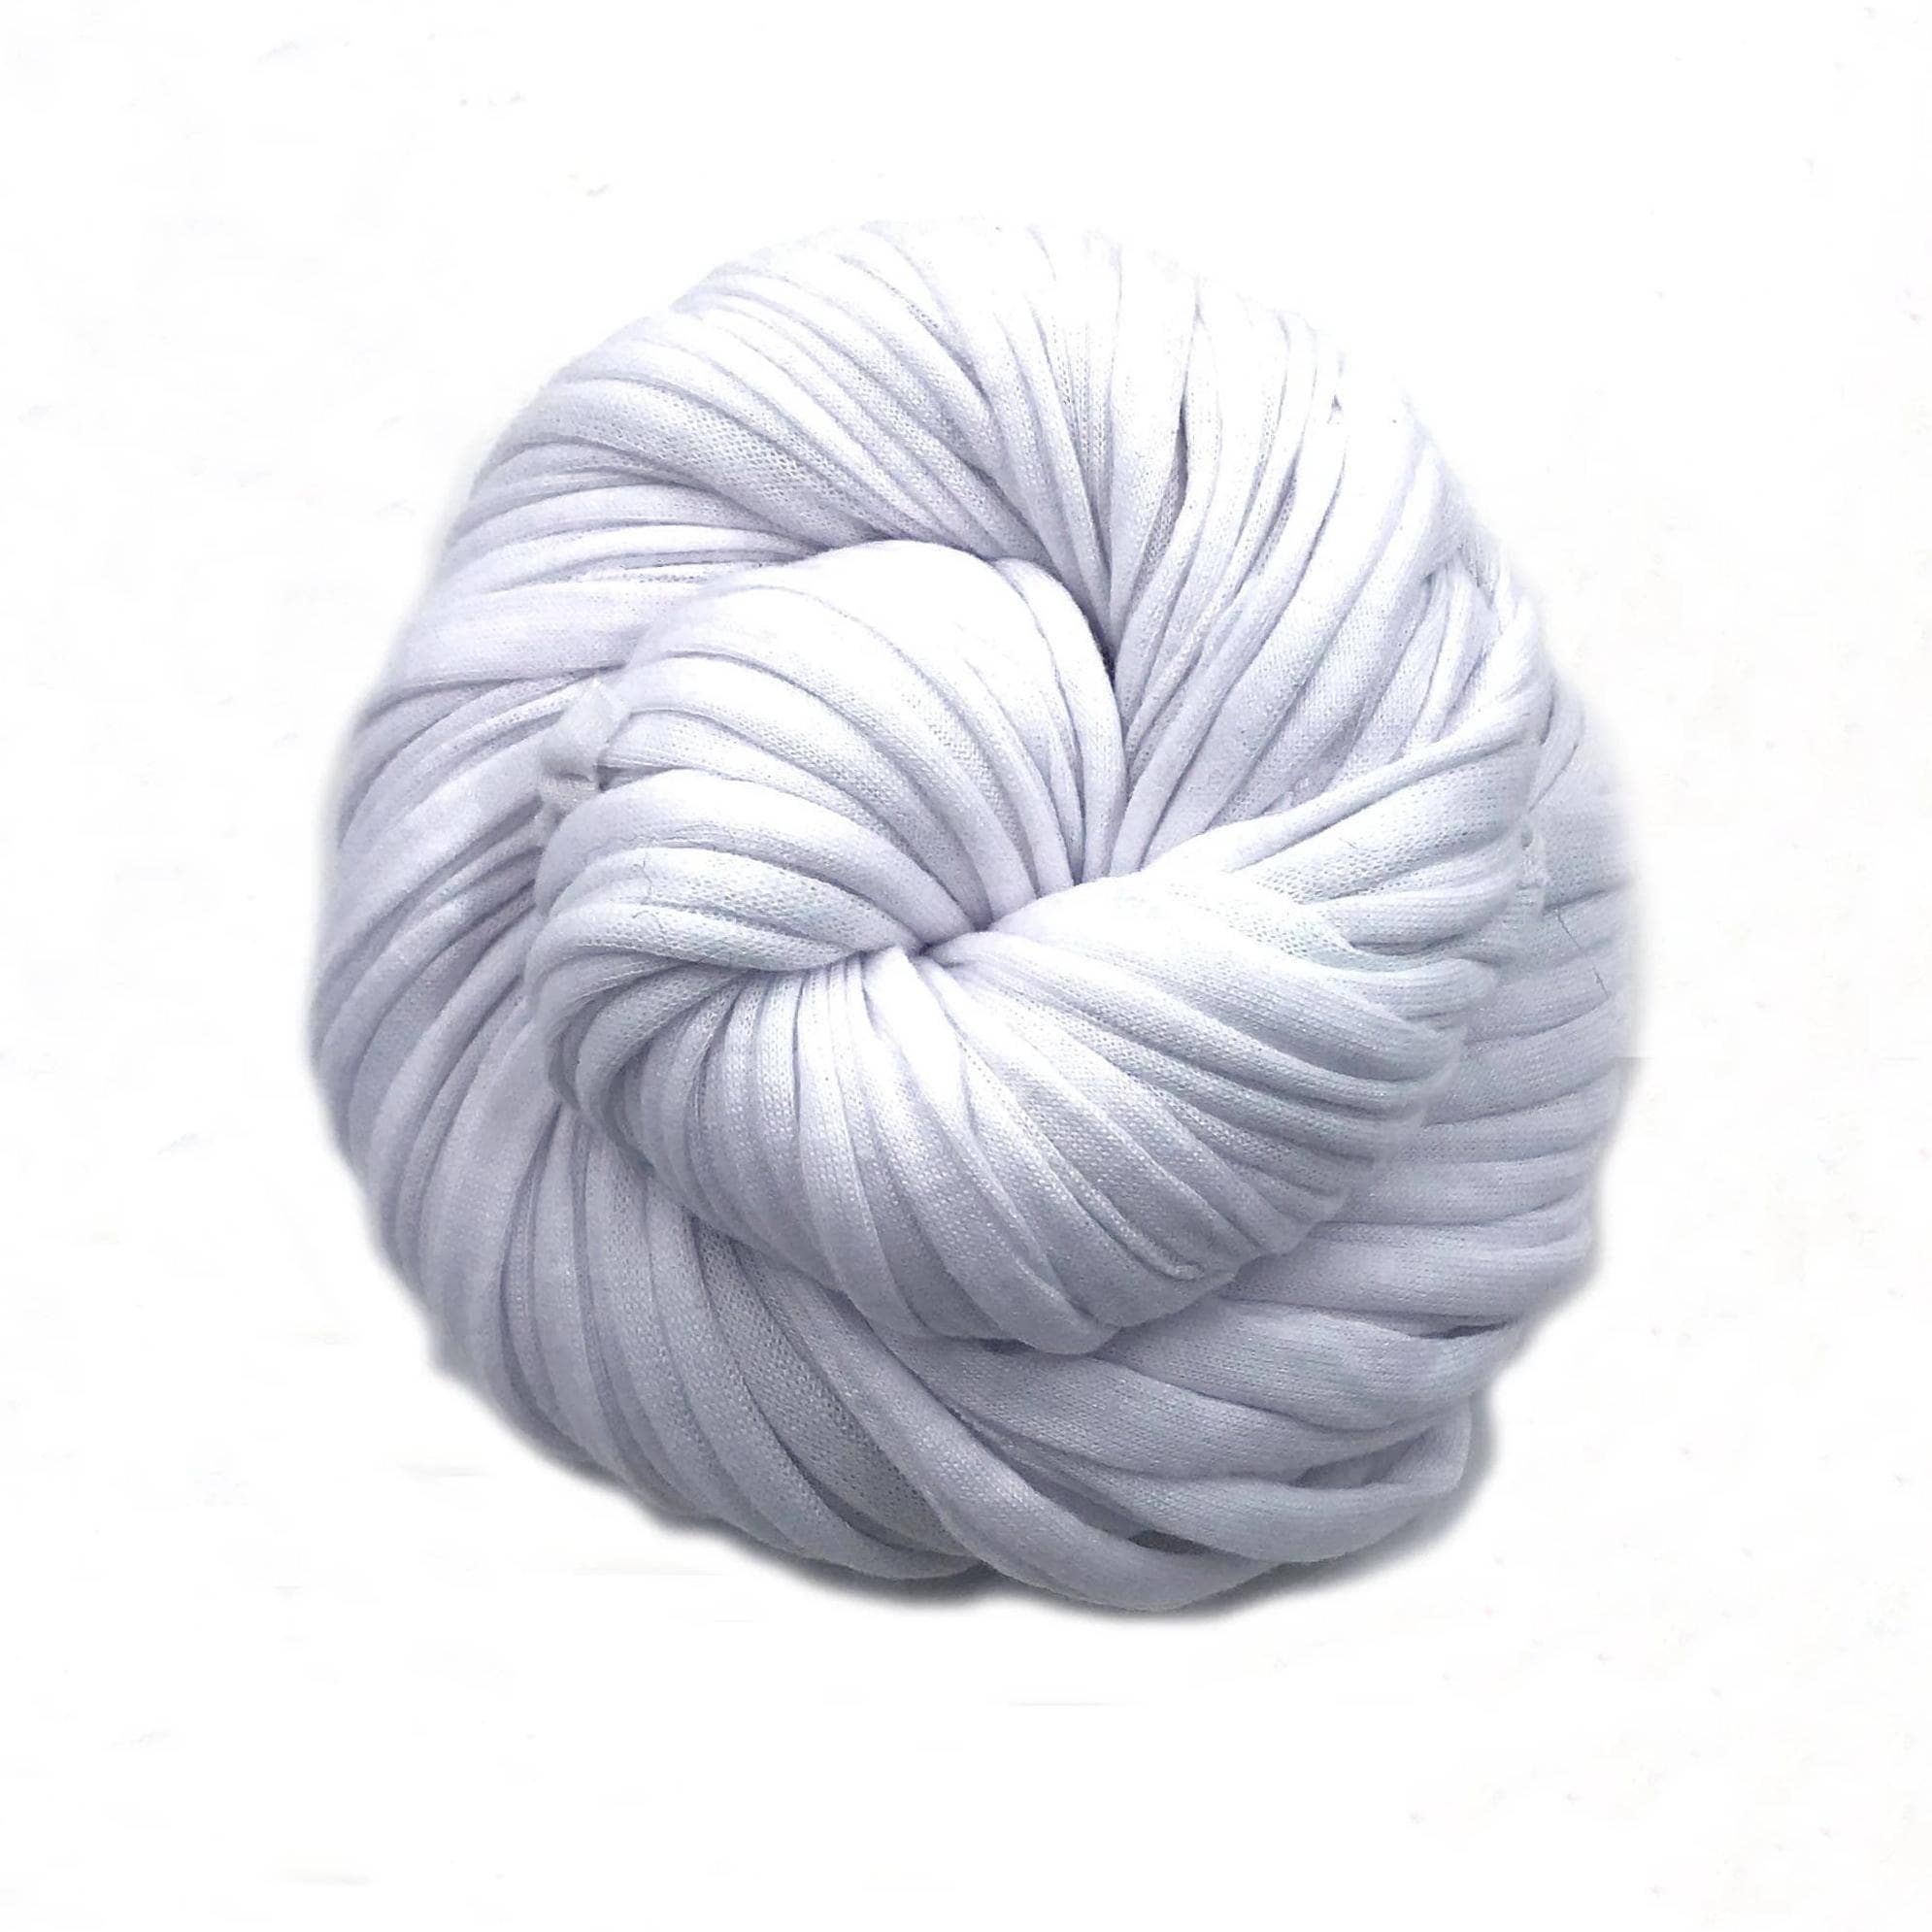 T-shirt Yarn. Crochet Cotton Yarn. Textile Yarn. Cotton Yarn for